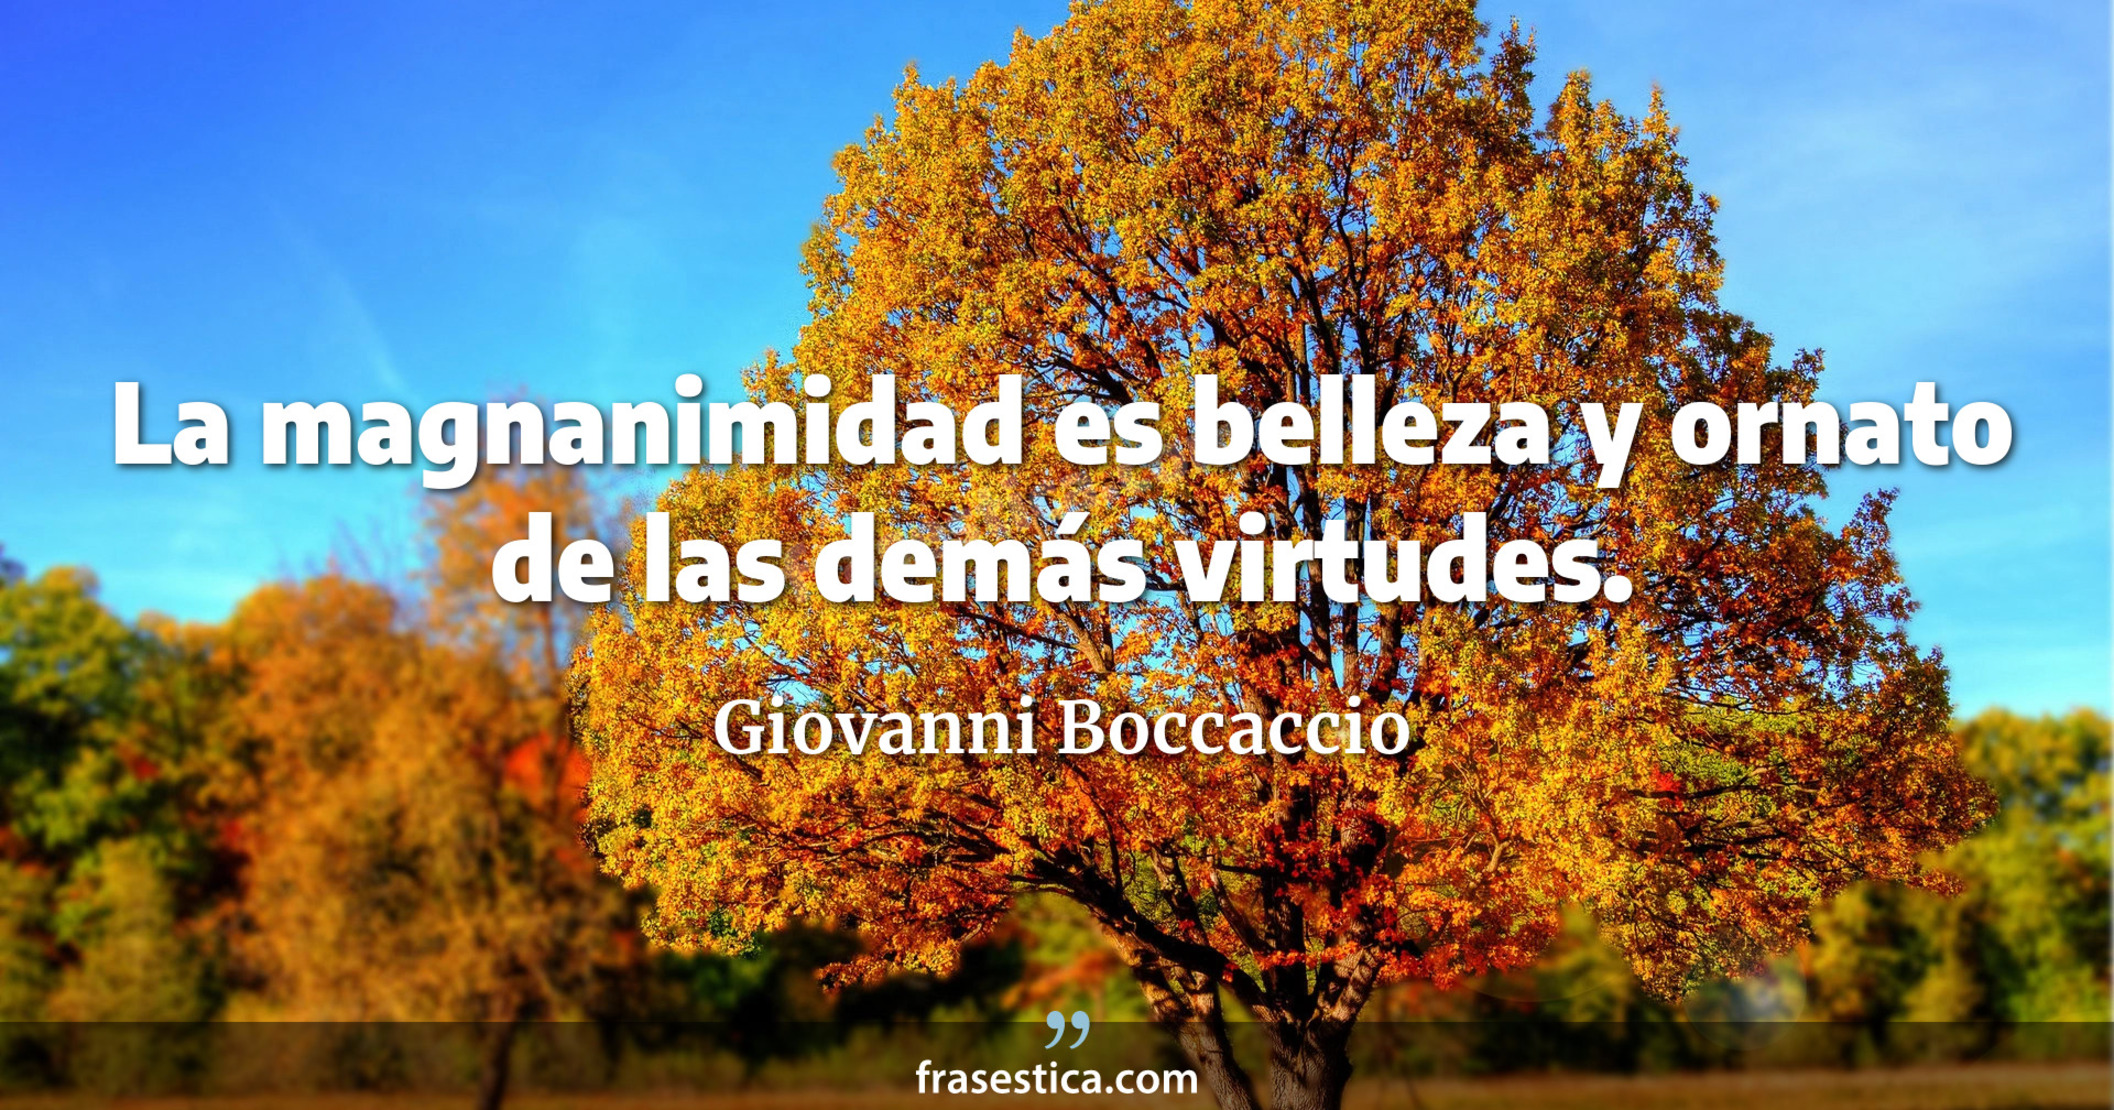 La magnanimidad es belleza y ornato de las demás virtudes. - Giovanni Boccaccio